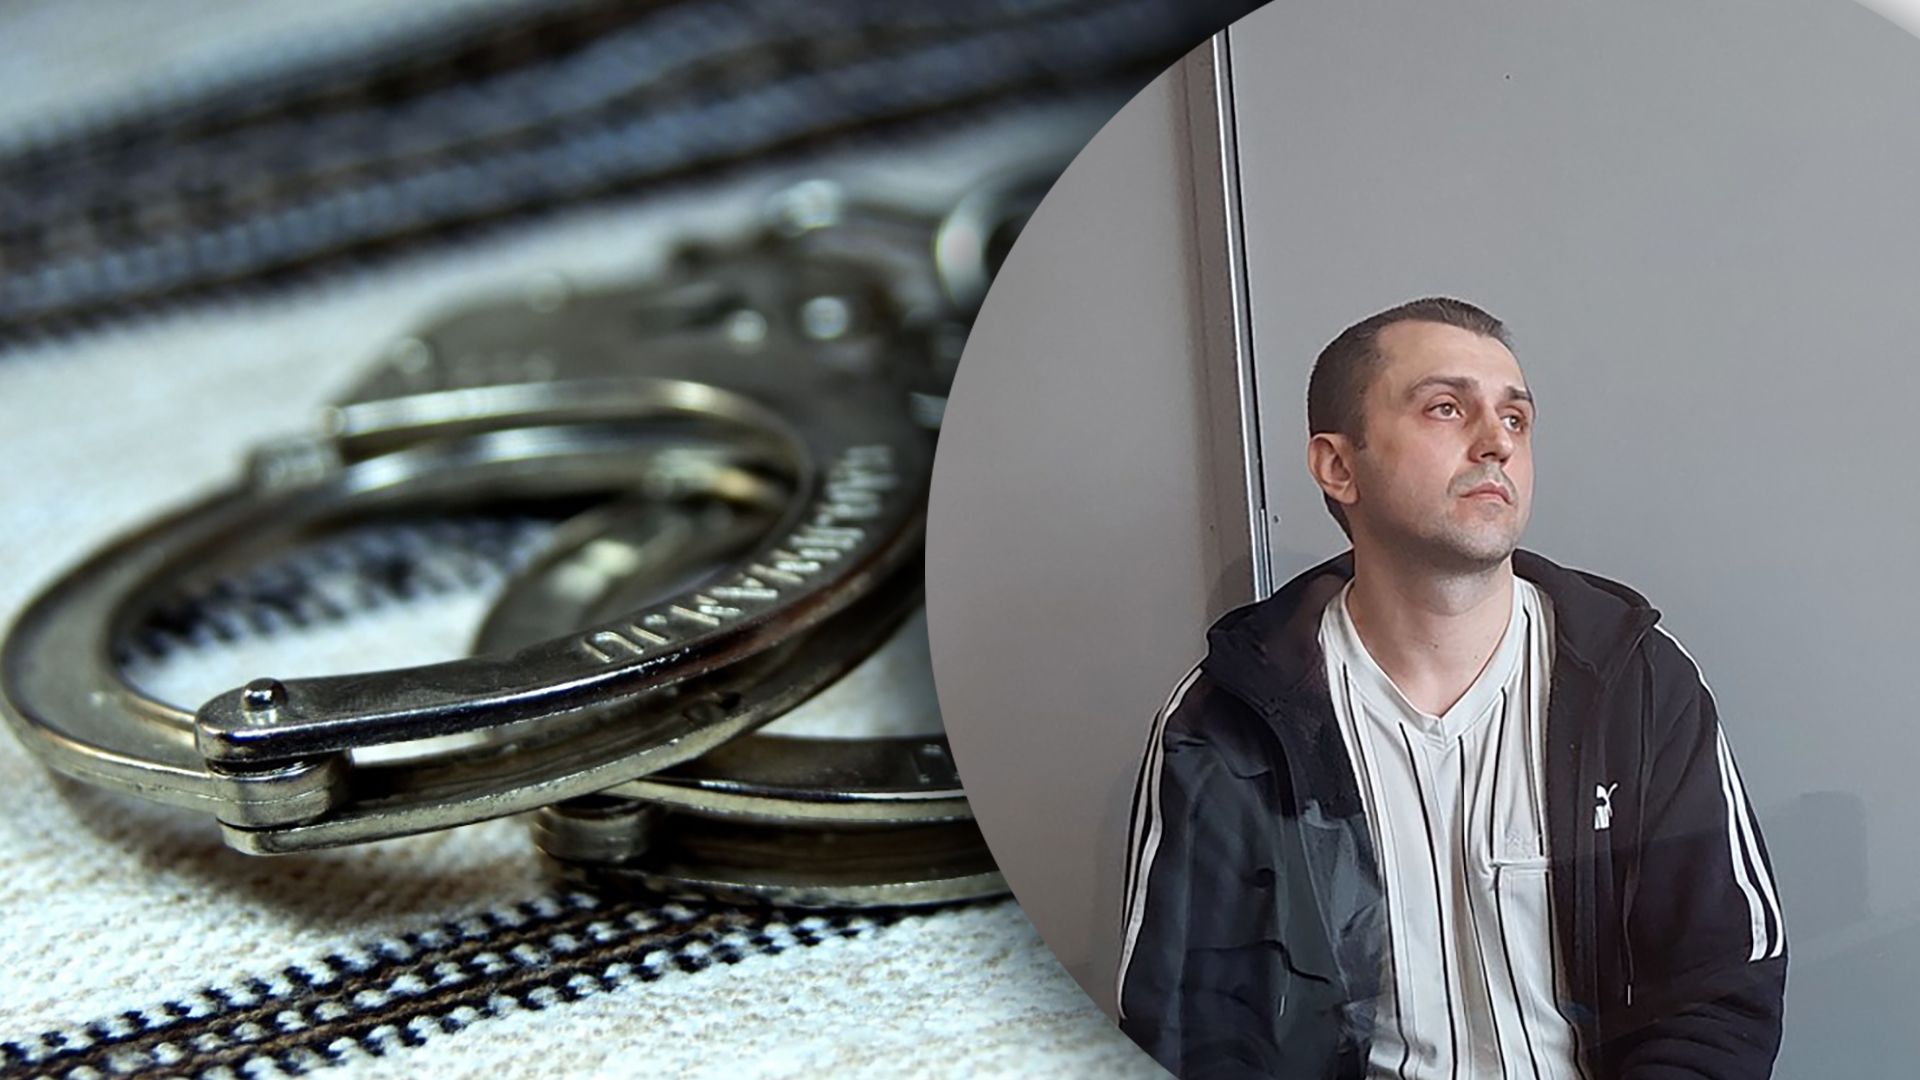 Допомагав росіянам - працівника СБУ засудили у Львові